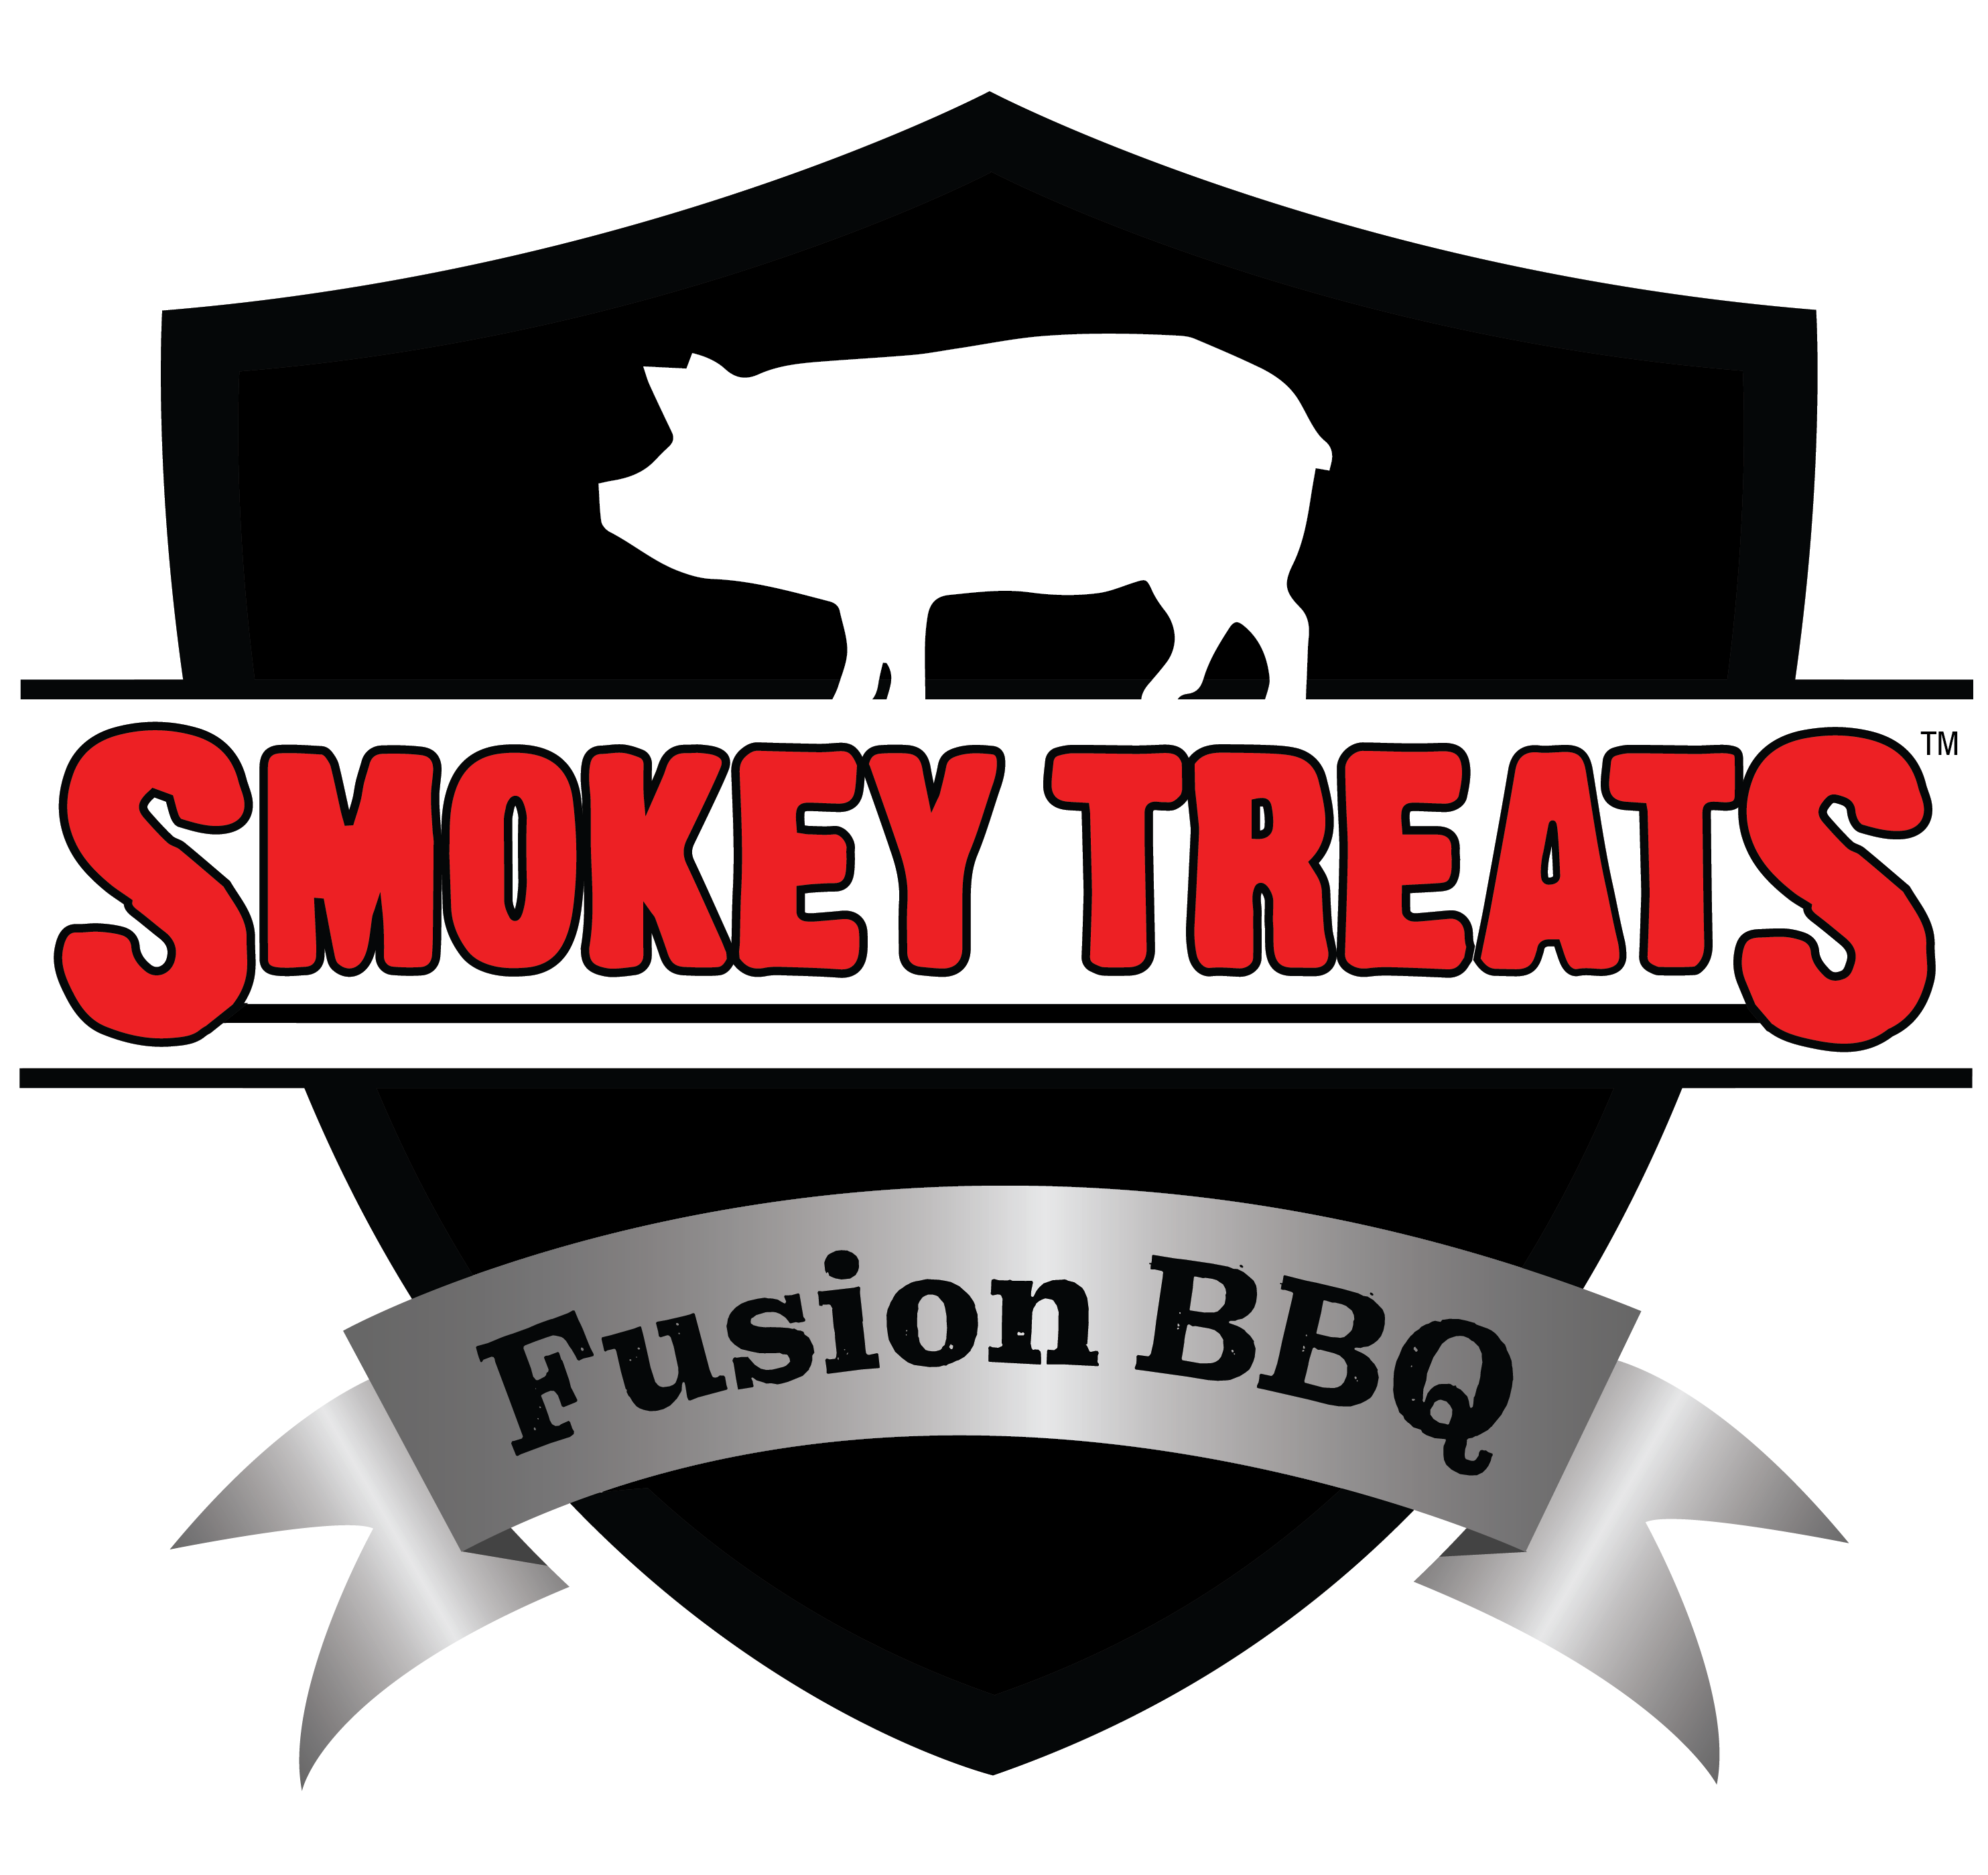 Smokey Treats Fusion BBQ